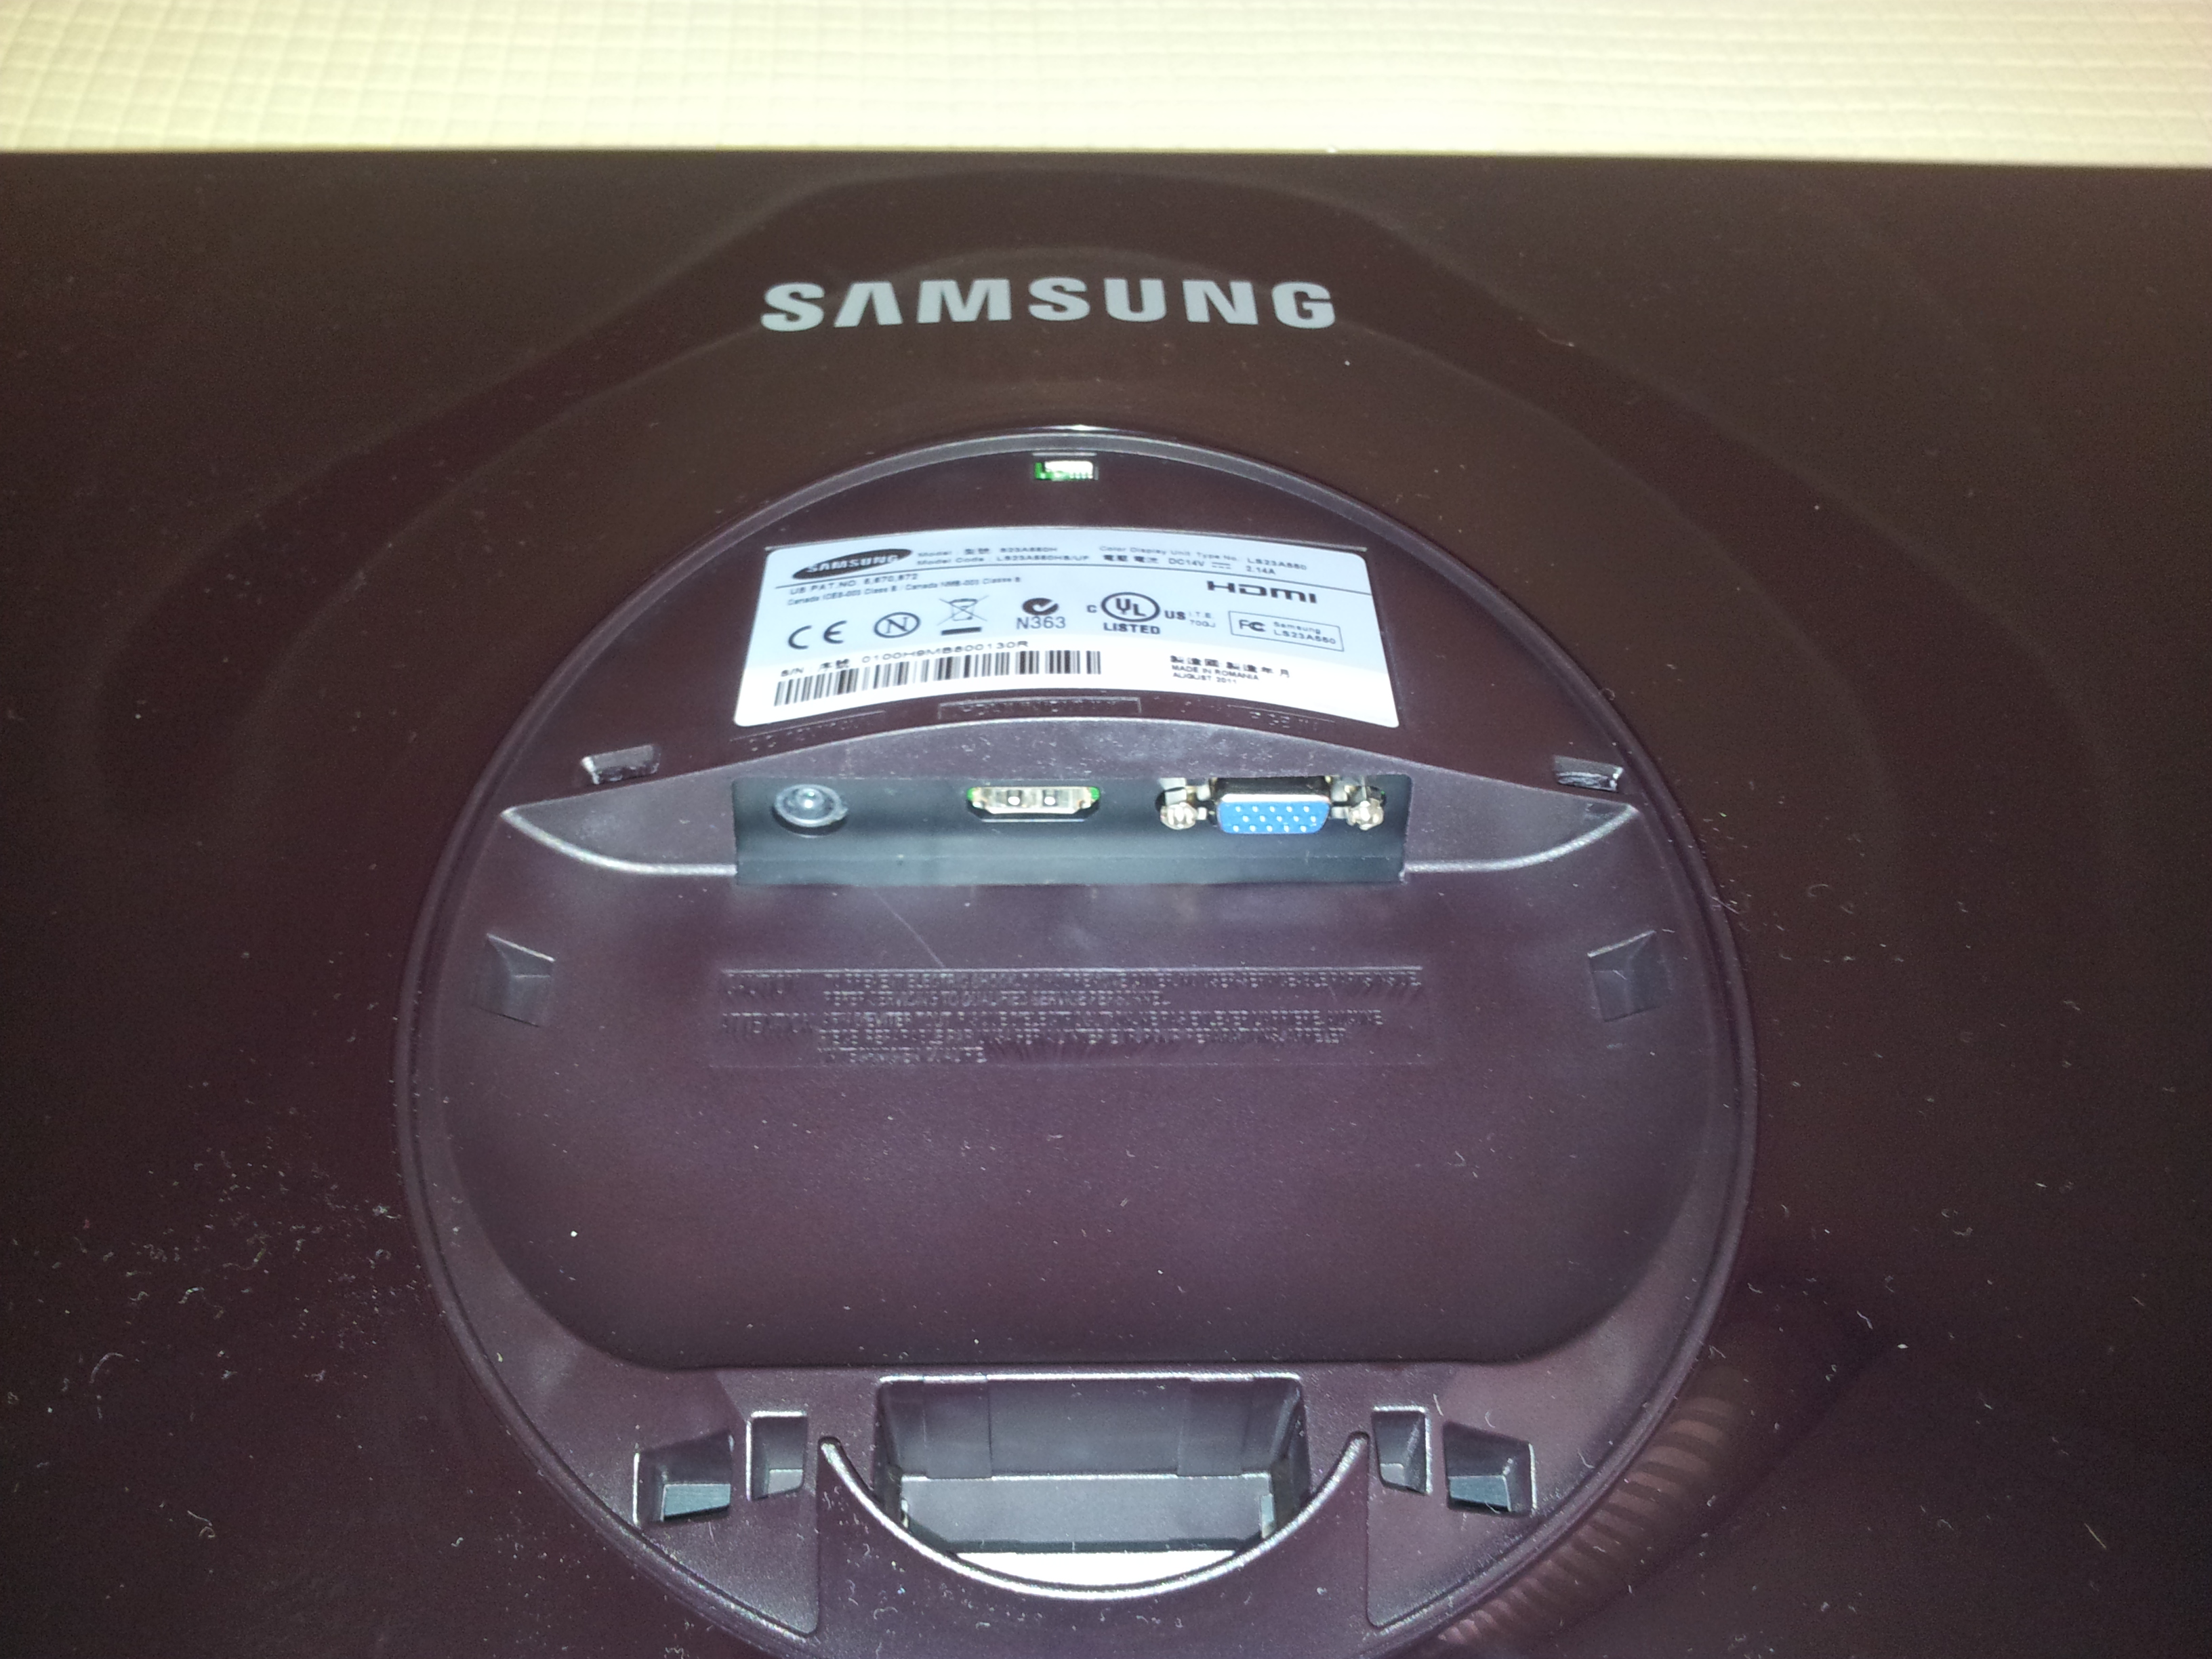  Samsung 23'' S23A550H Kullanıcı İncelemesi